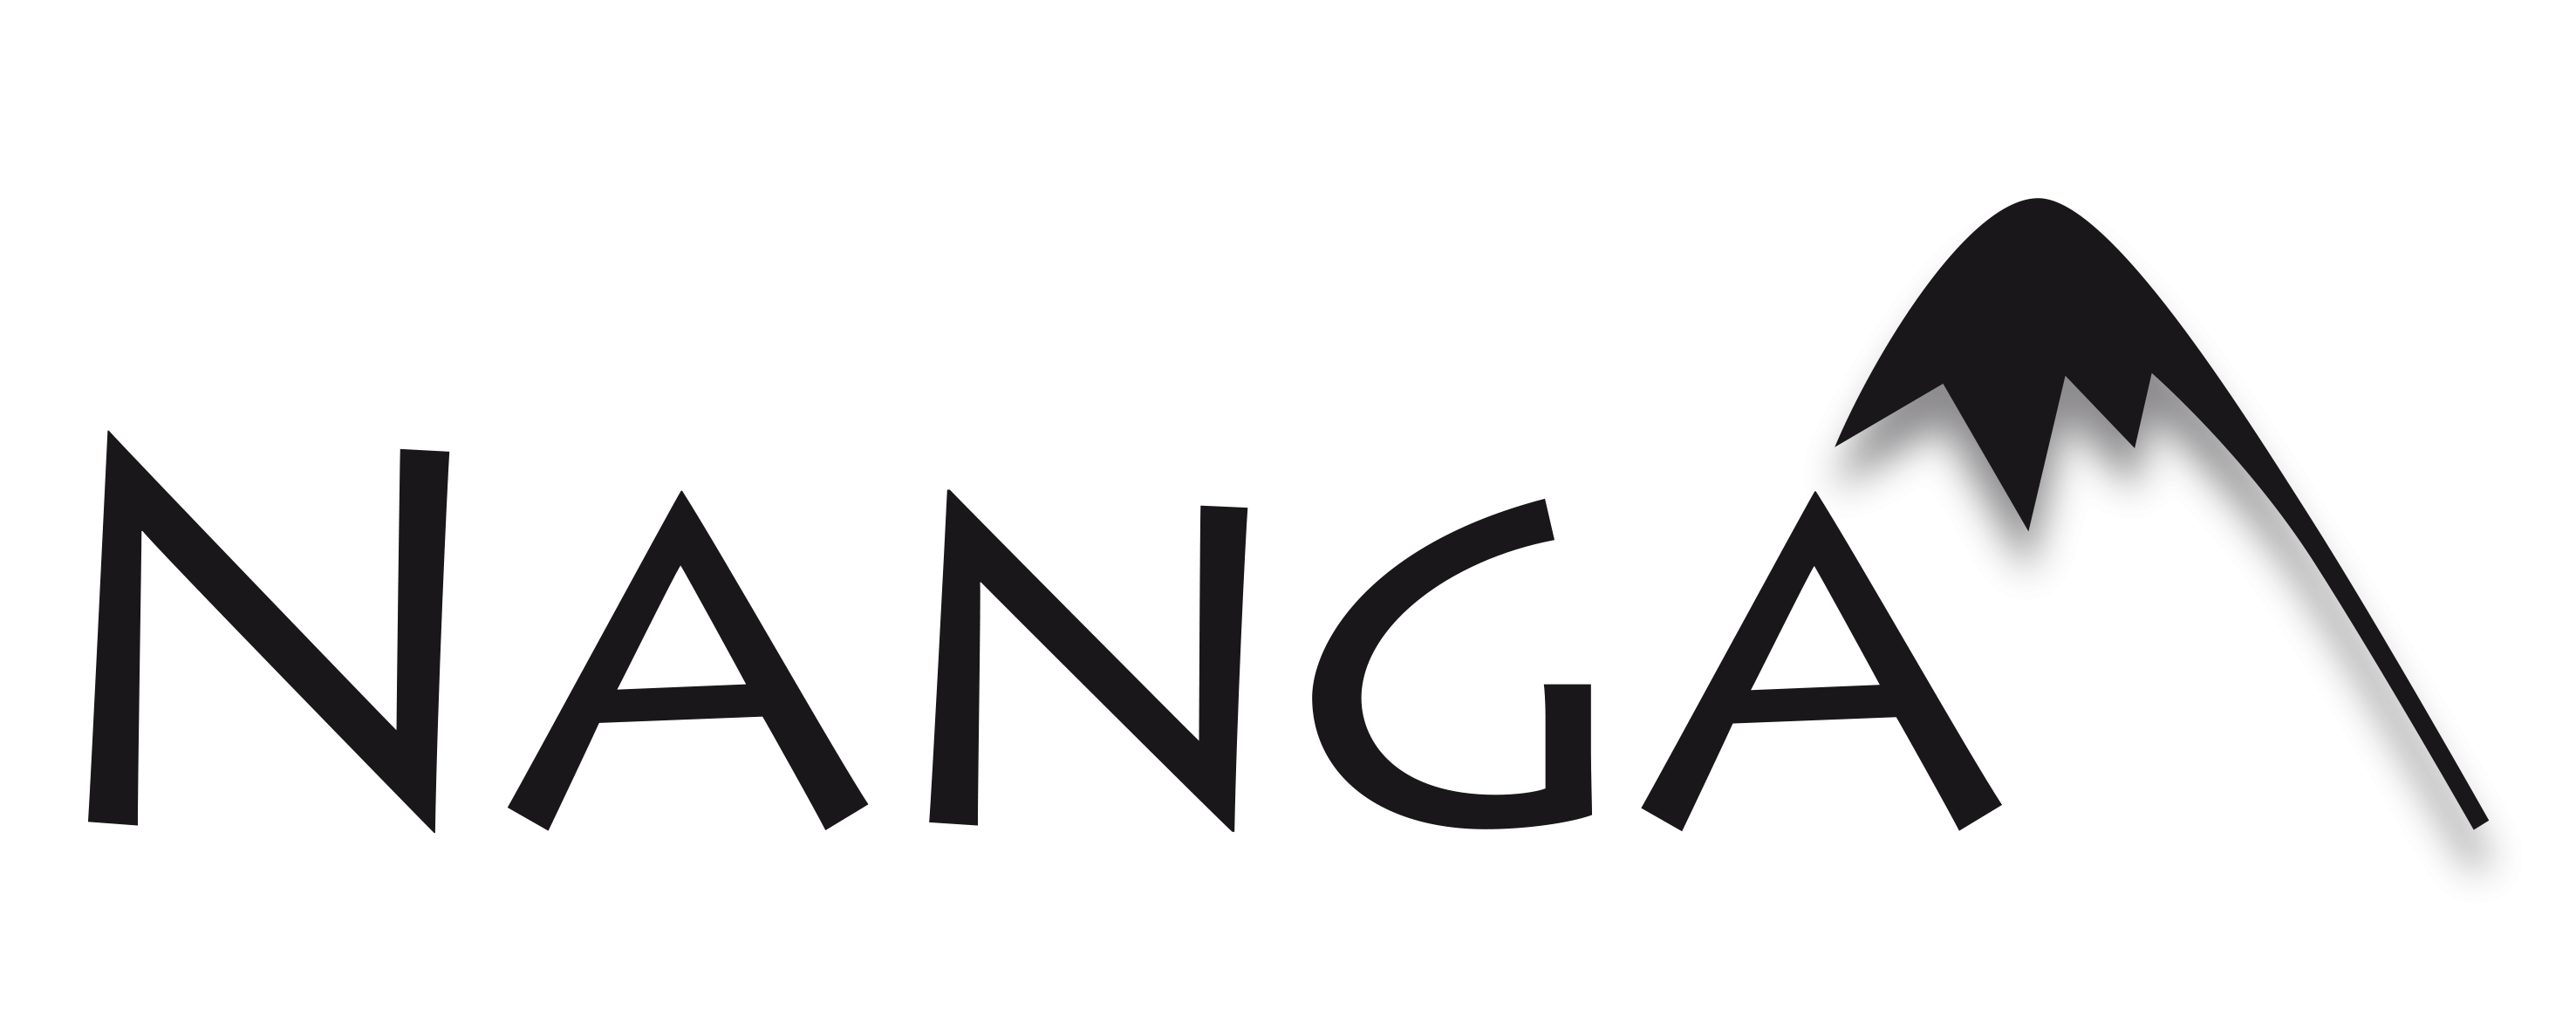 Nanga